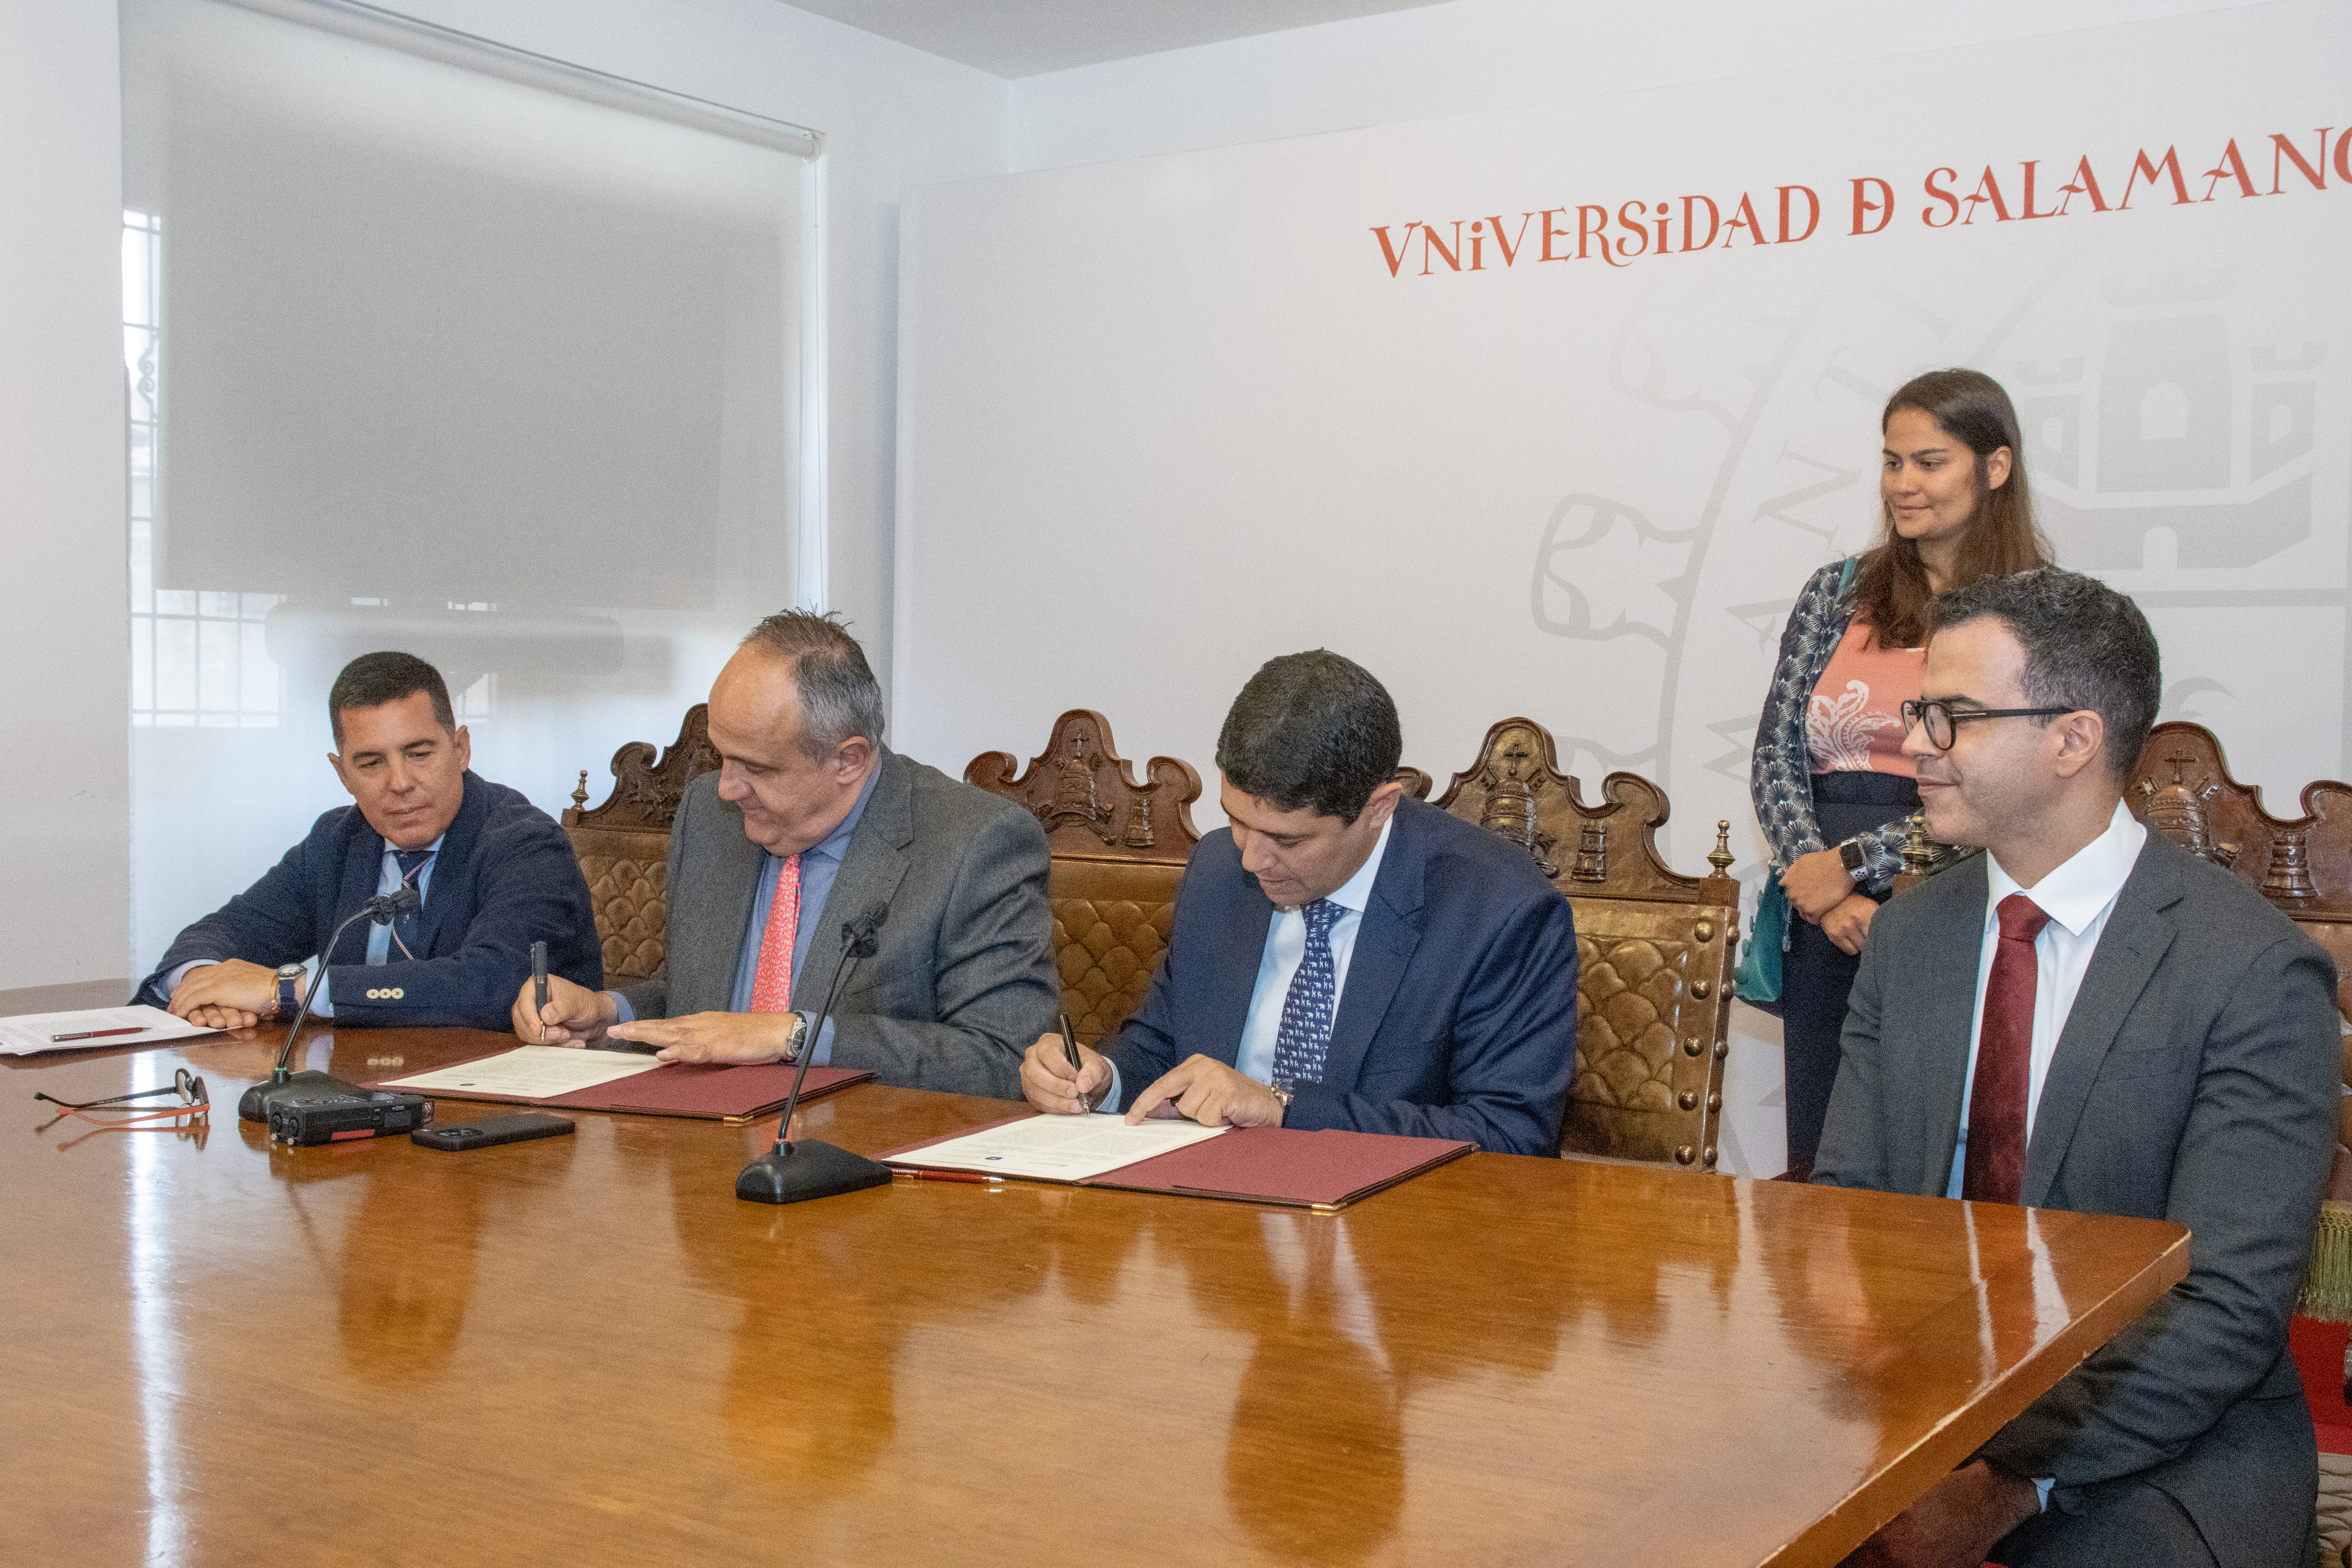 La Universidad de Salamanca colaborará con el Gobierno de Brasil en la lucha contra la corrupción